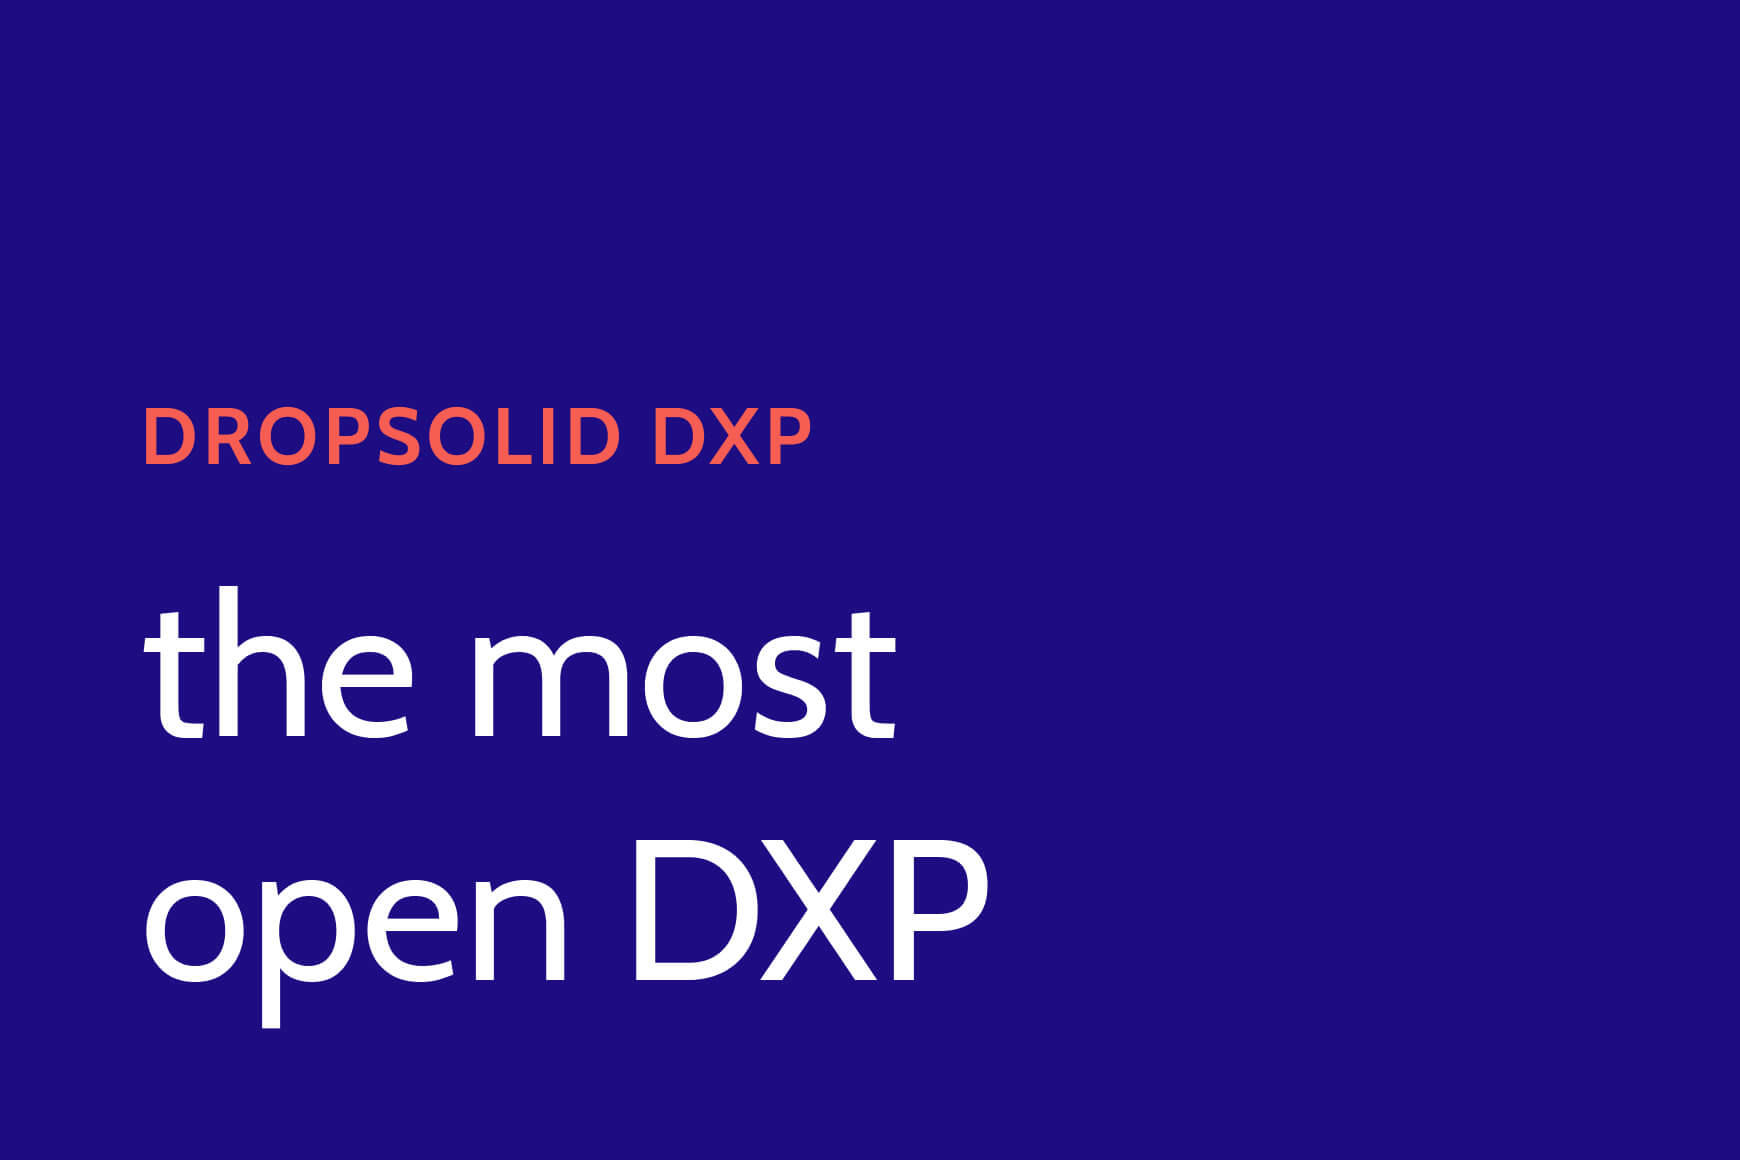 Dropsolid DXP, the most open DXP